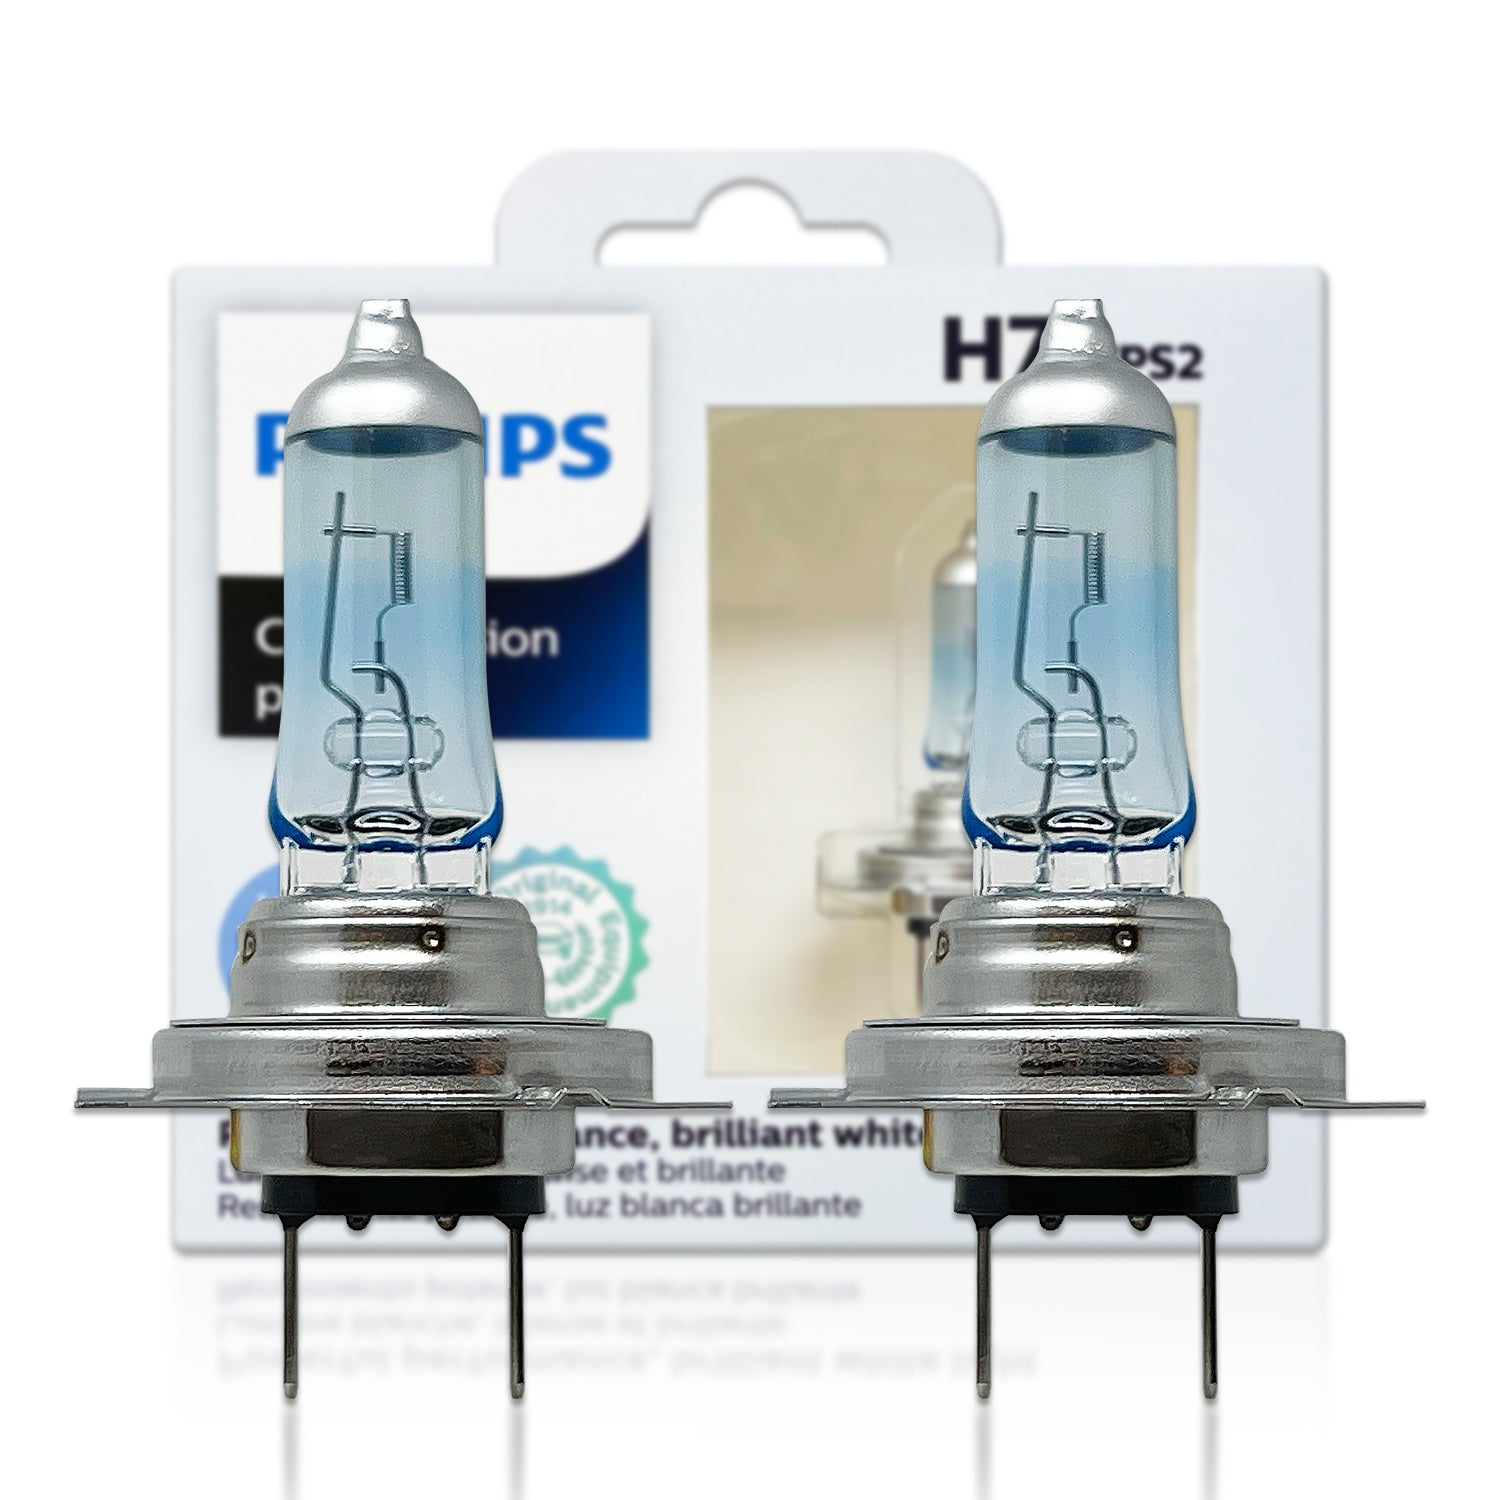 PHILIPS Halogenlampen / Glühlampen / LEDs - 11972U6000X2 